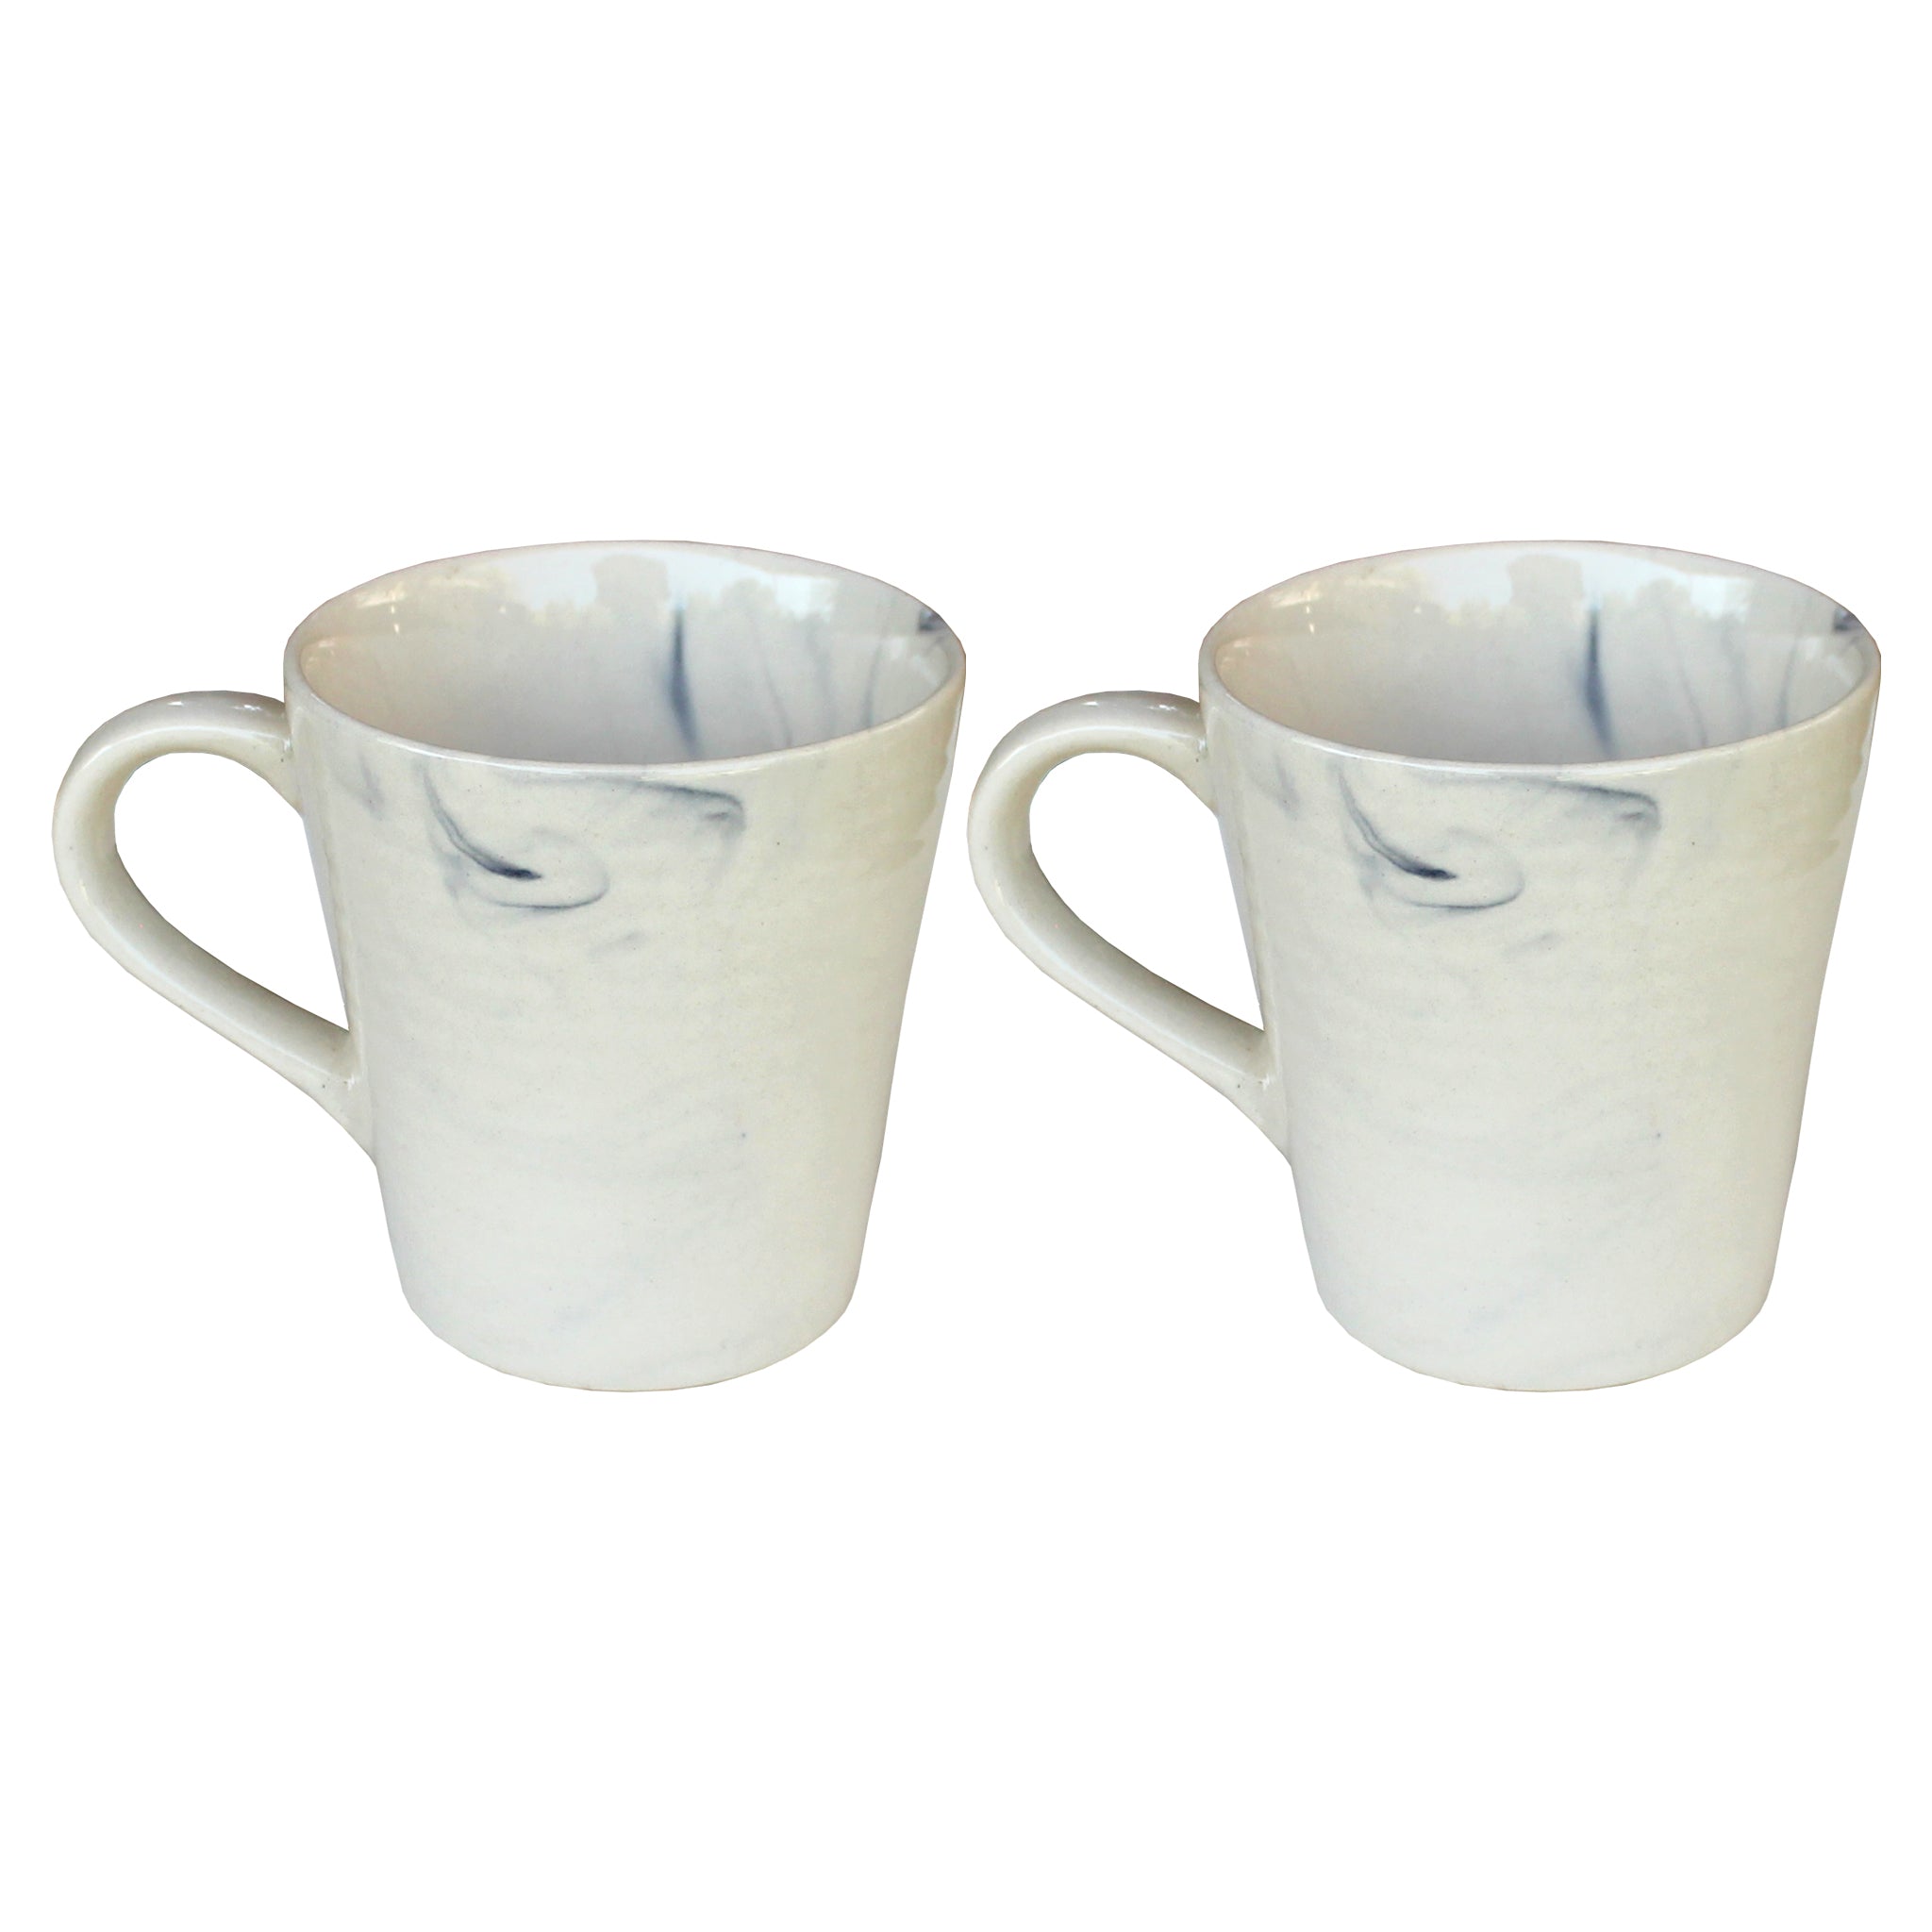 Cream Mugs Set of 2 - 9x7x10 cm